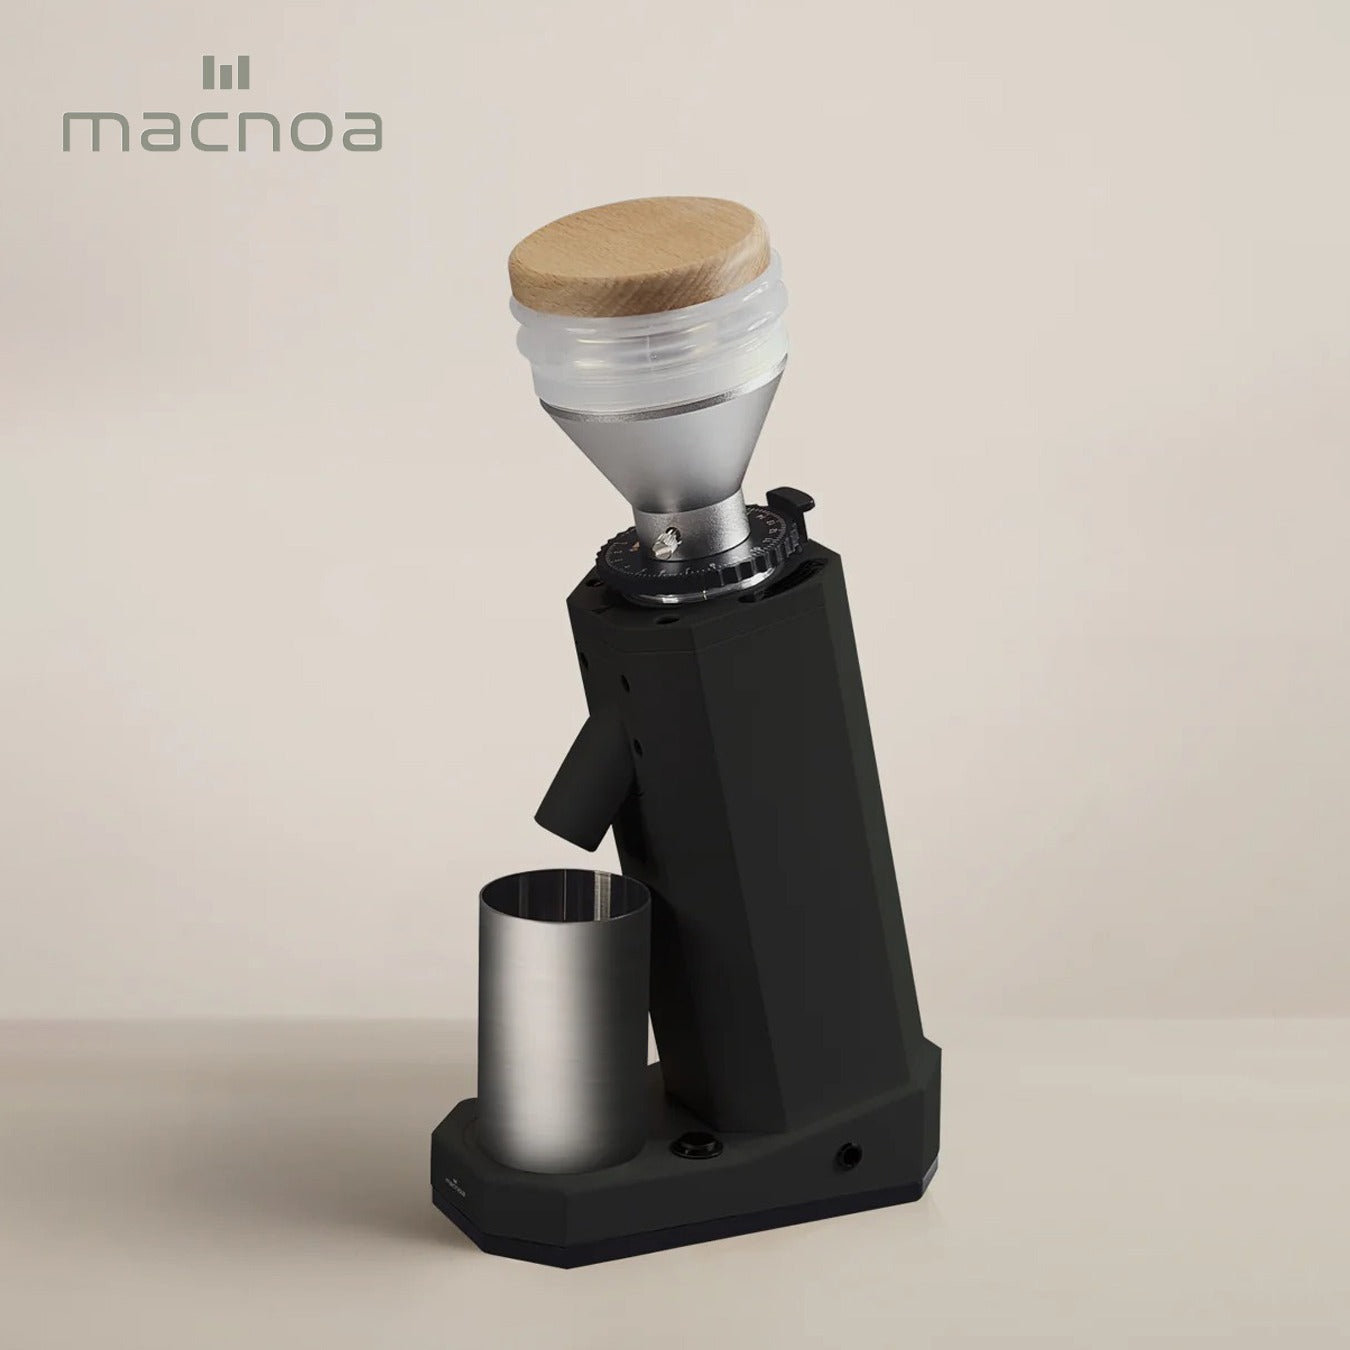 مطحنة القهوة من ماكوا، مزودة بشفرات من التيتانيوم مع تحكم مثالي في حجم الطحن